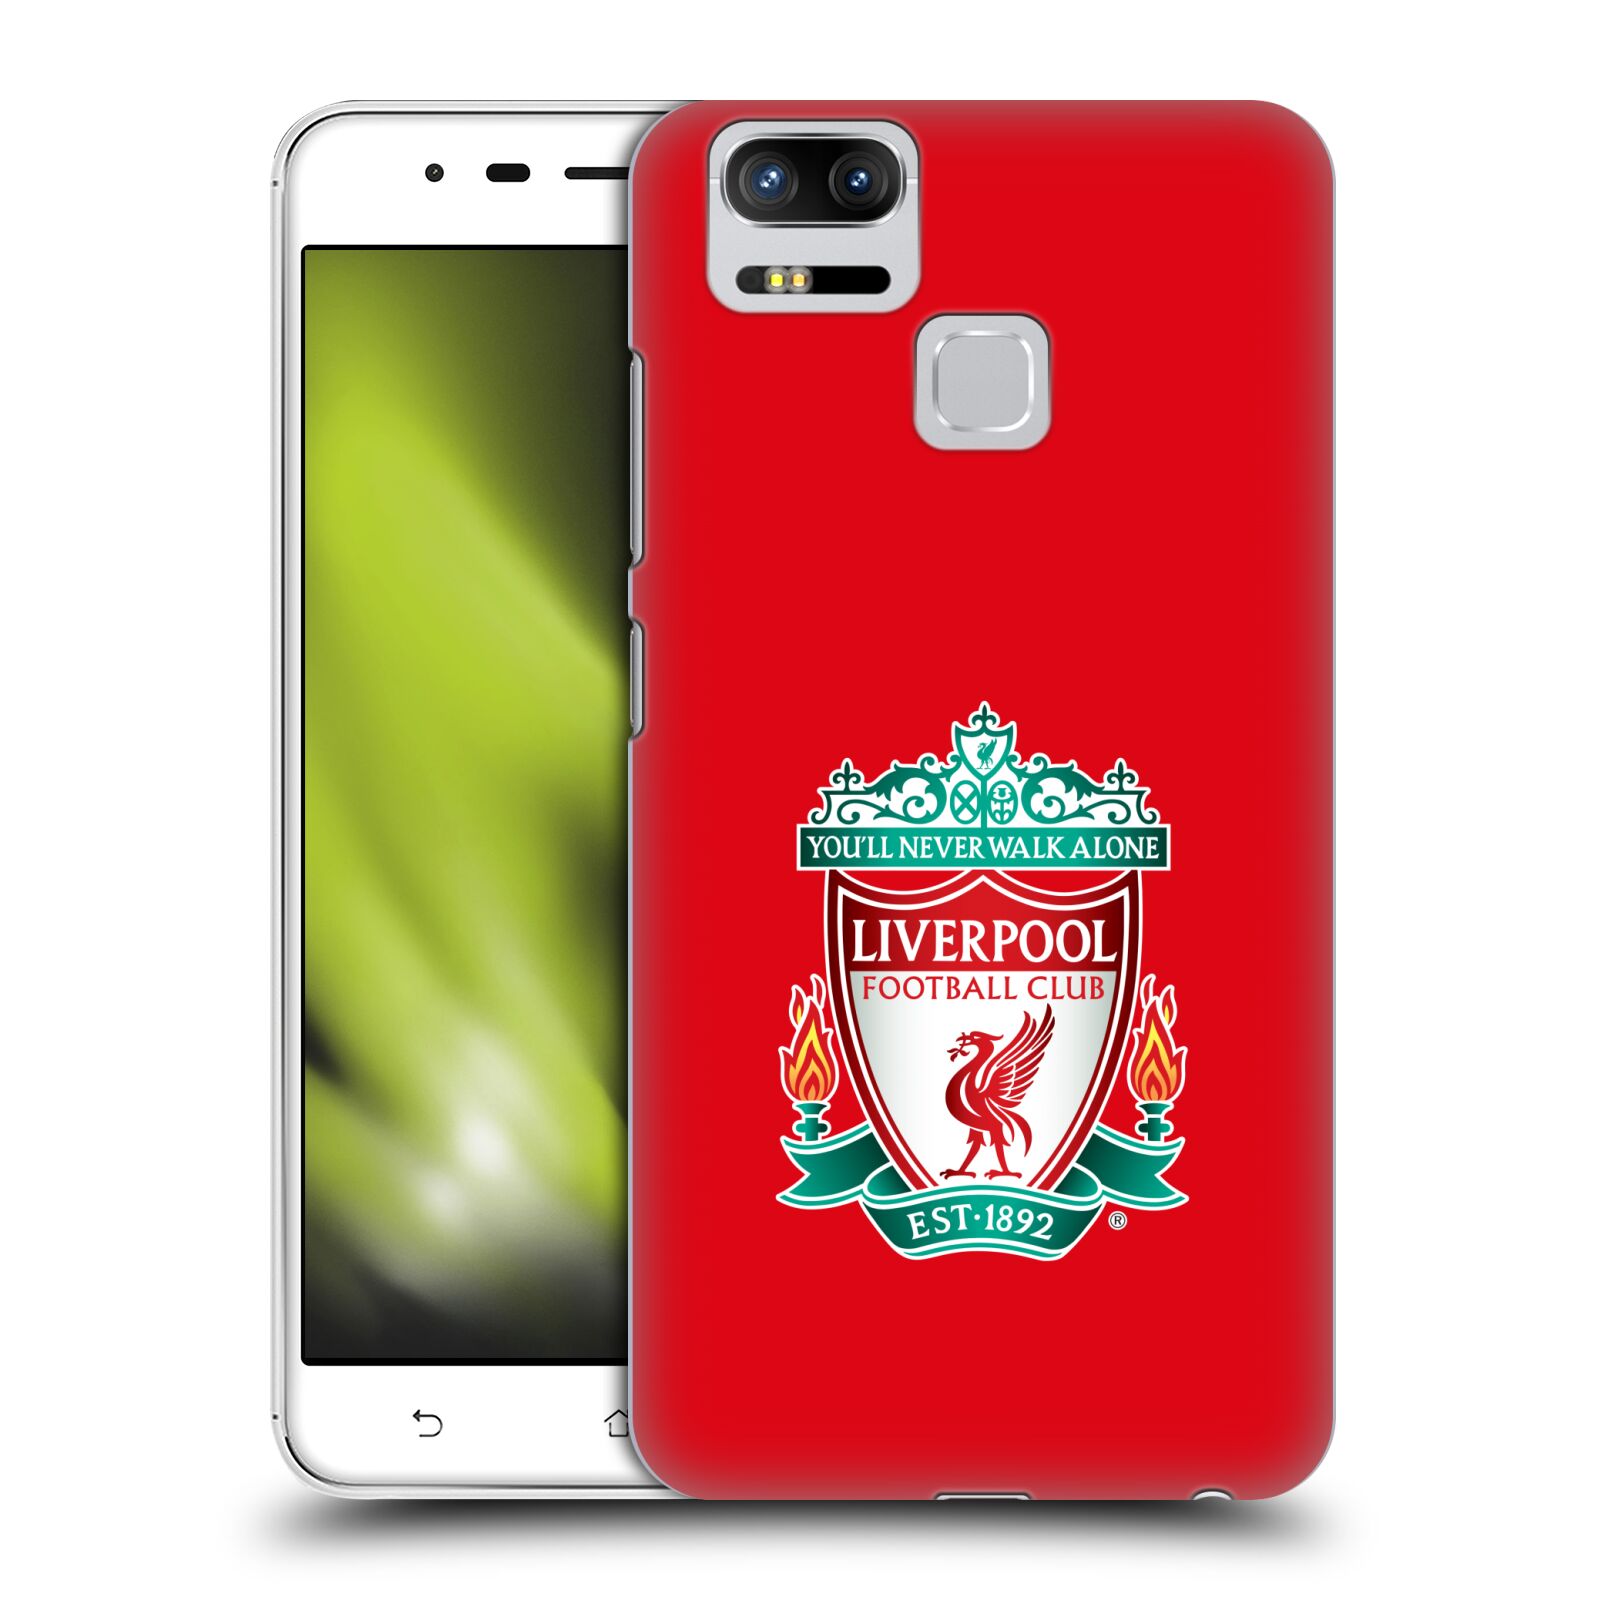 HEAD CASE plastový obal na mobil Asus Zenfone 3 Zoom ZE553KL Fotbalový klub Liverpool barevný znak červené pozadí